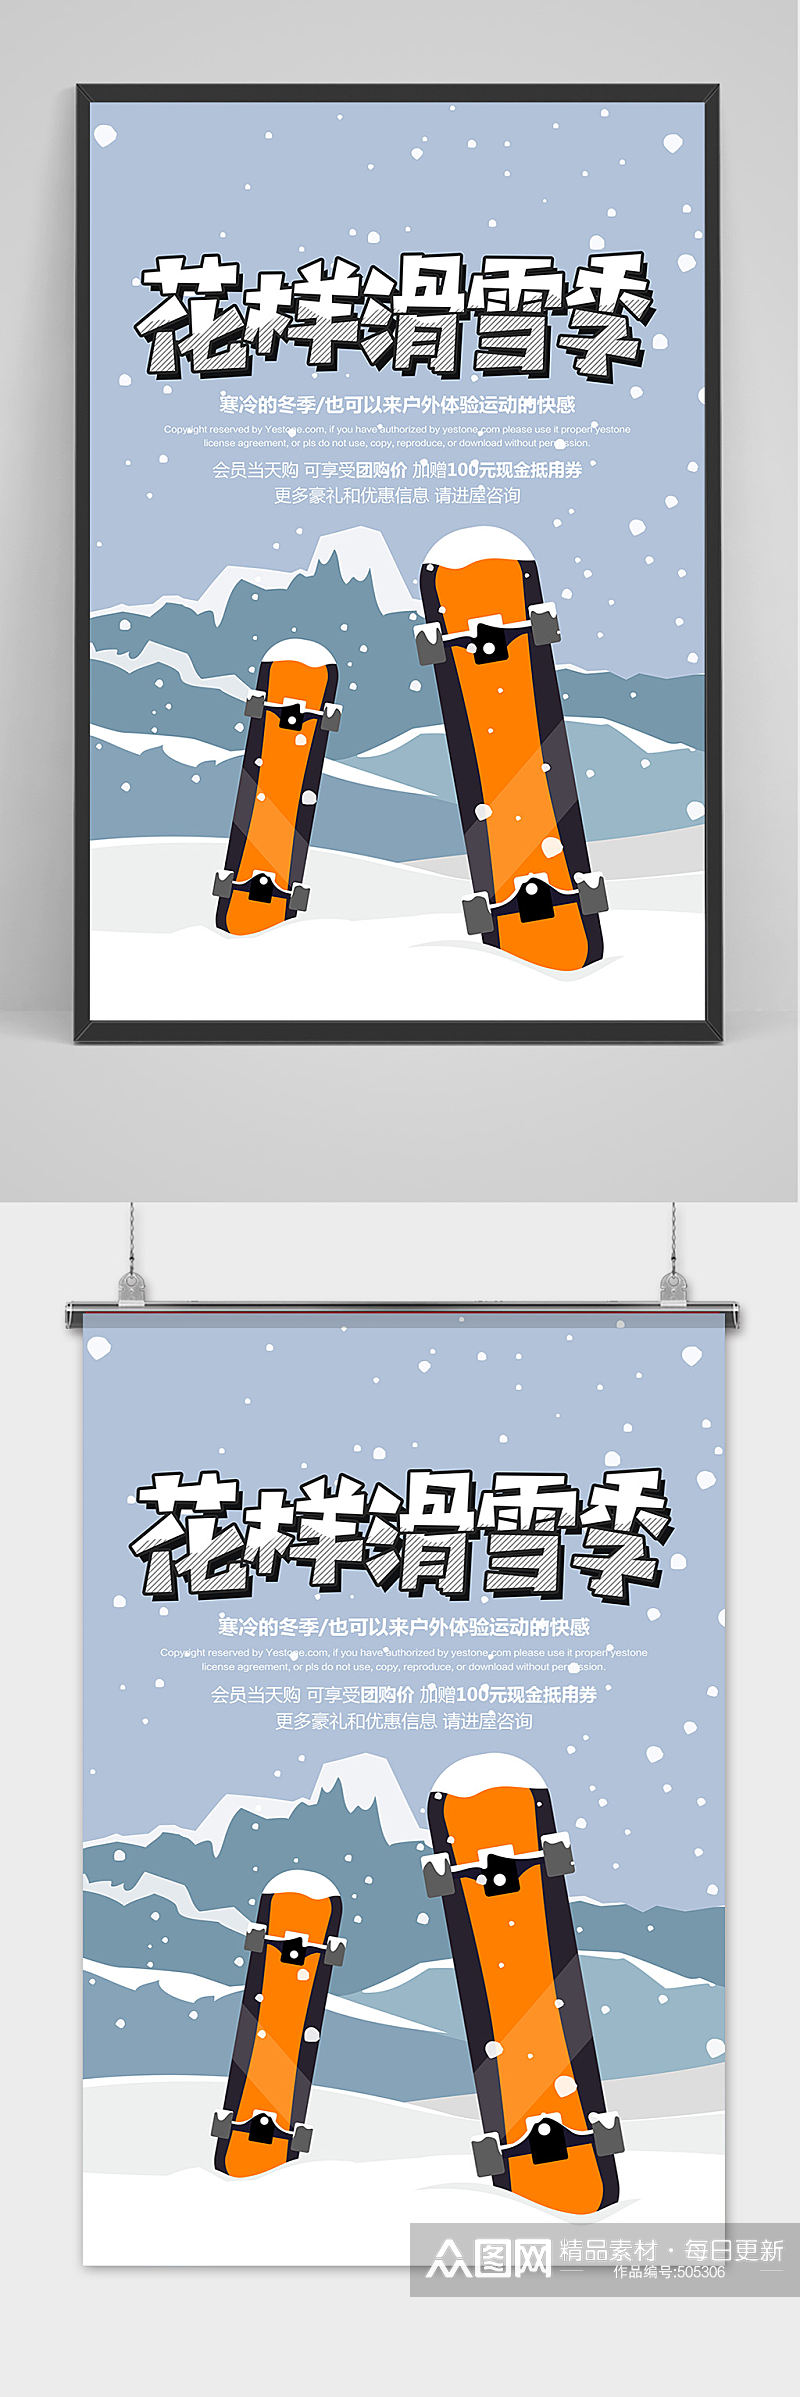 简约冬季滑雪季设计海报素材